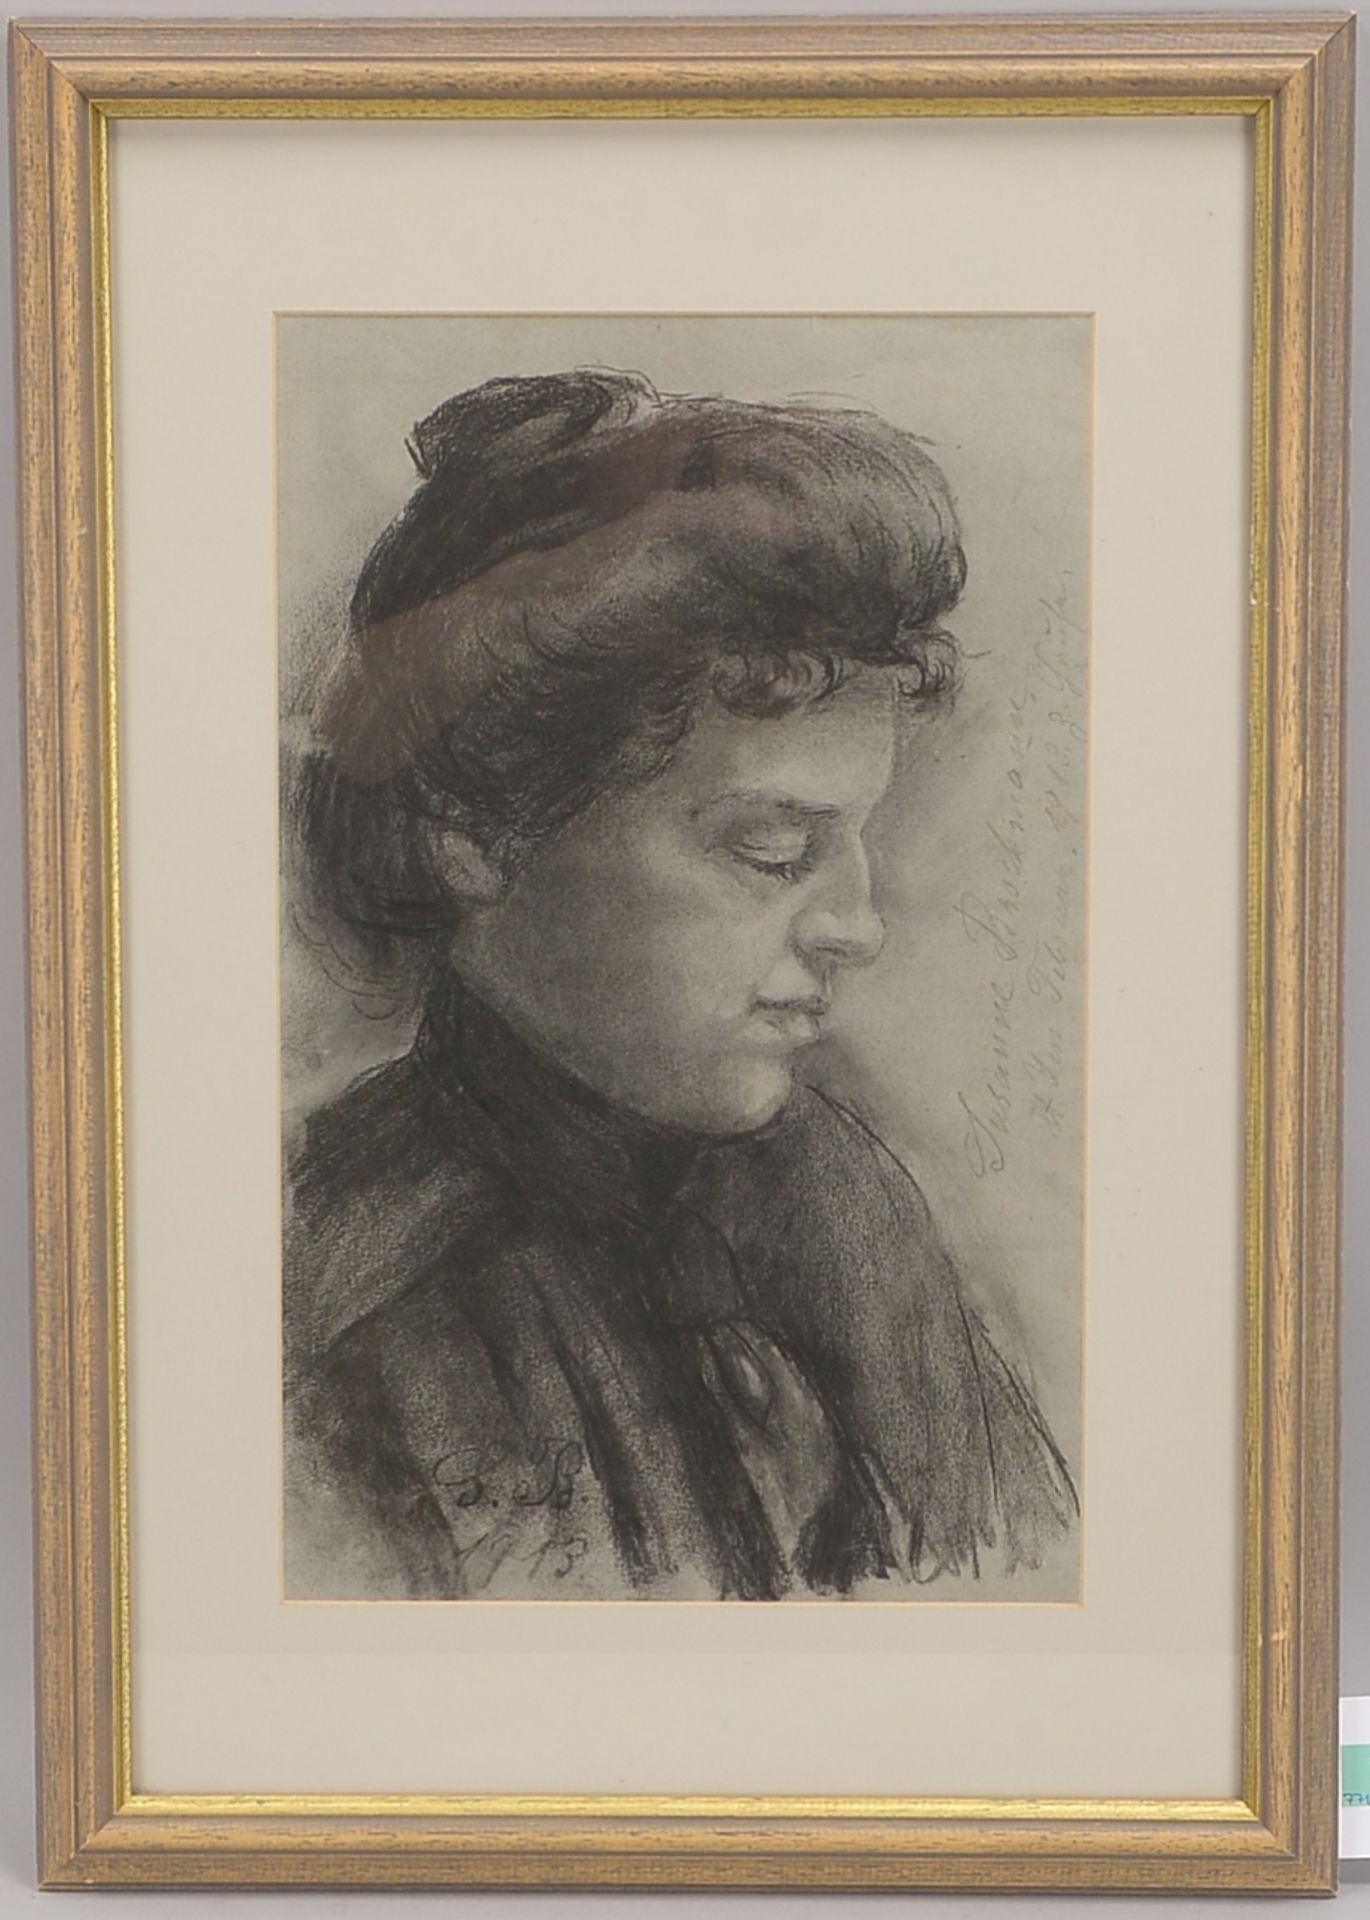 Monogrammistin S.B., 'Frauenportrait', Kohlezeichnung, im Blatt monogrammiert 'SB' und datiert '1913